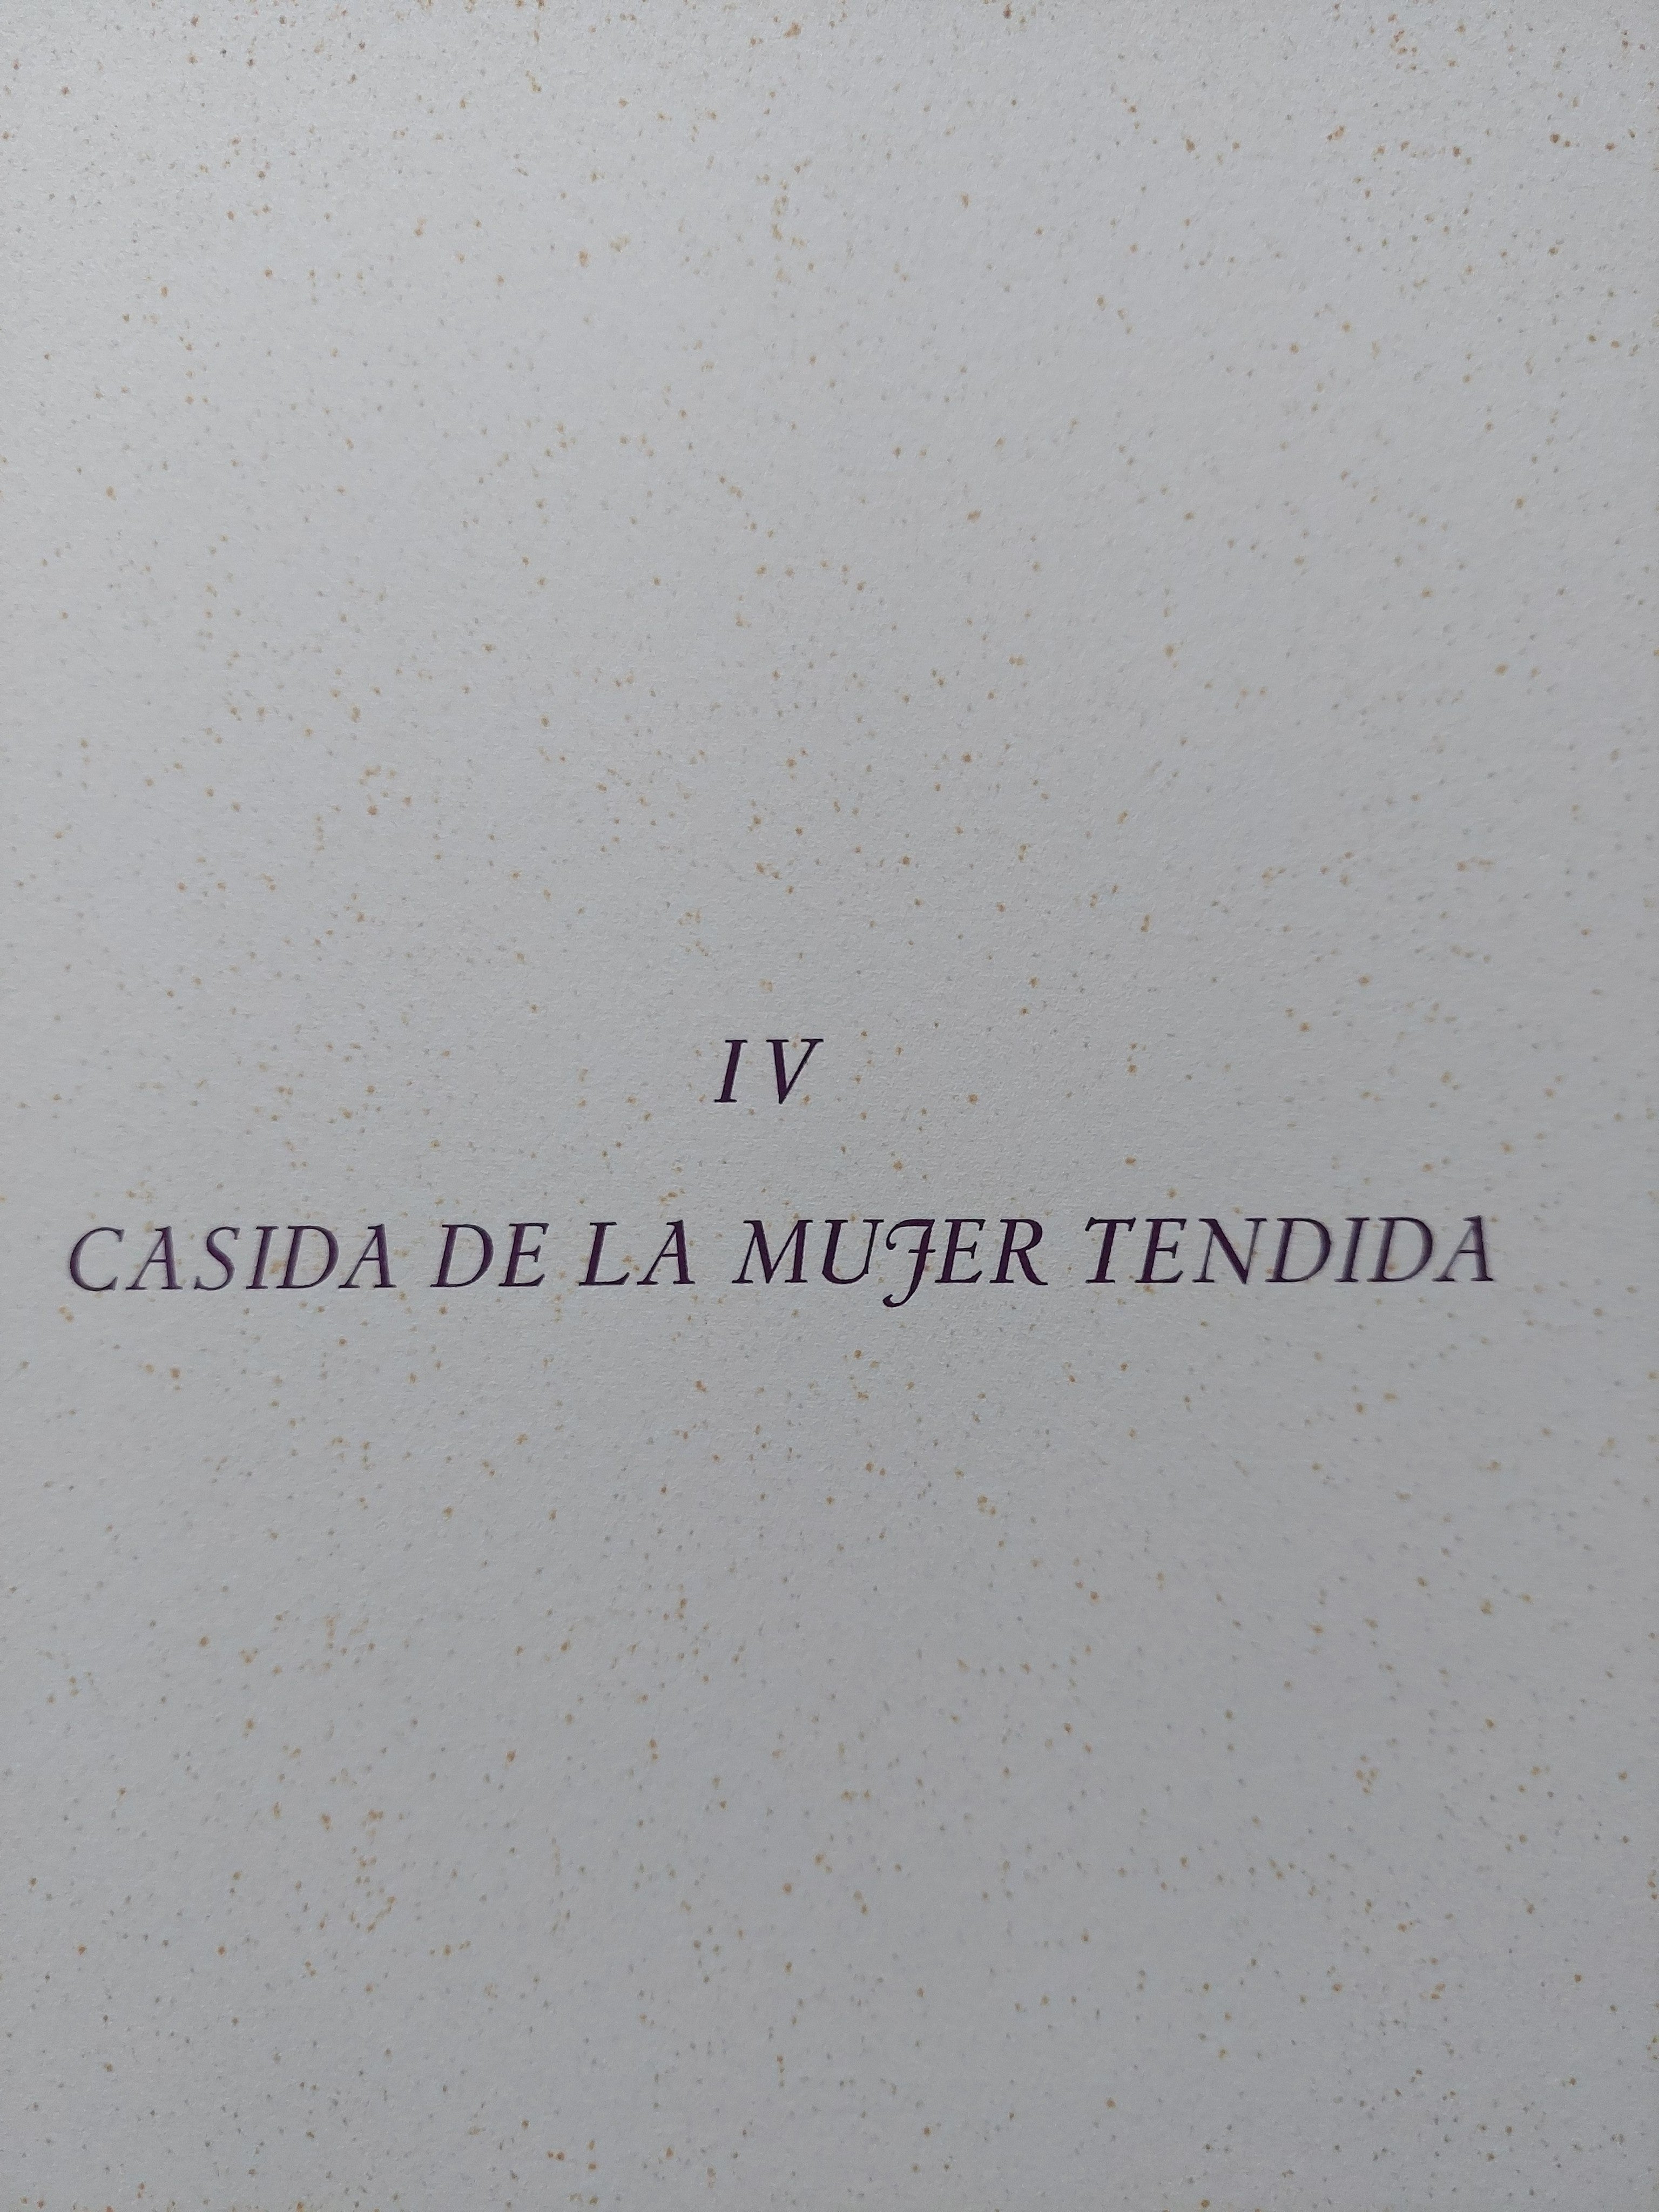 Manuel VIOLA. Casida de la Mujer tendida, 1969. Litografía original firmada